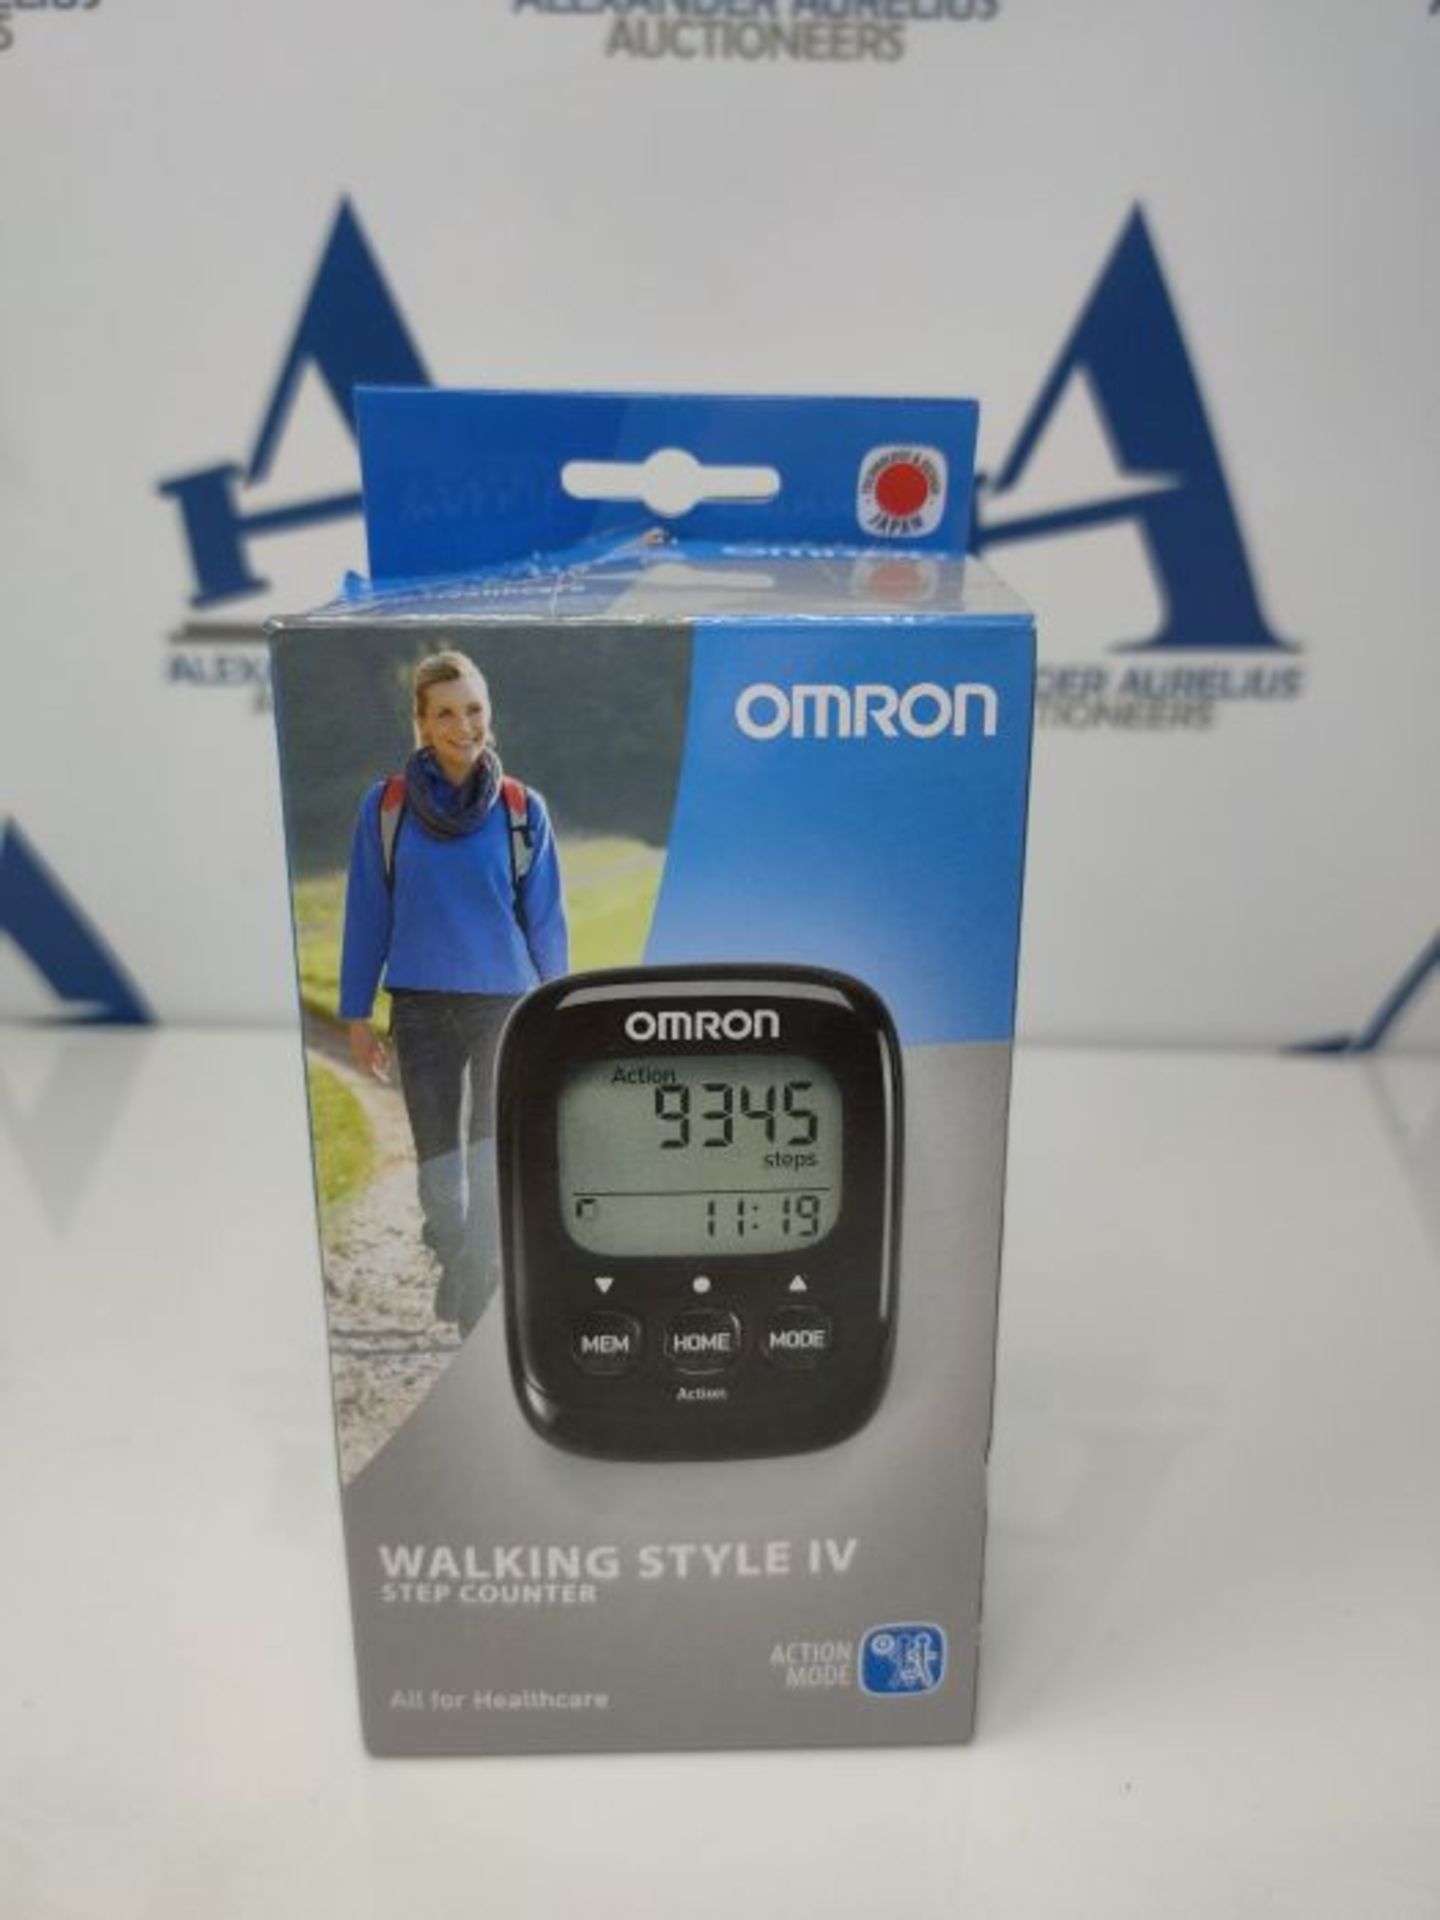 OMRON SchrittzÃ¤hler Walking Style IV mit prÃ¤zisem 3D Sensor zur Messung von Schr - Image 2 of 3